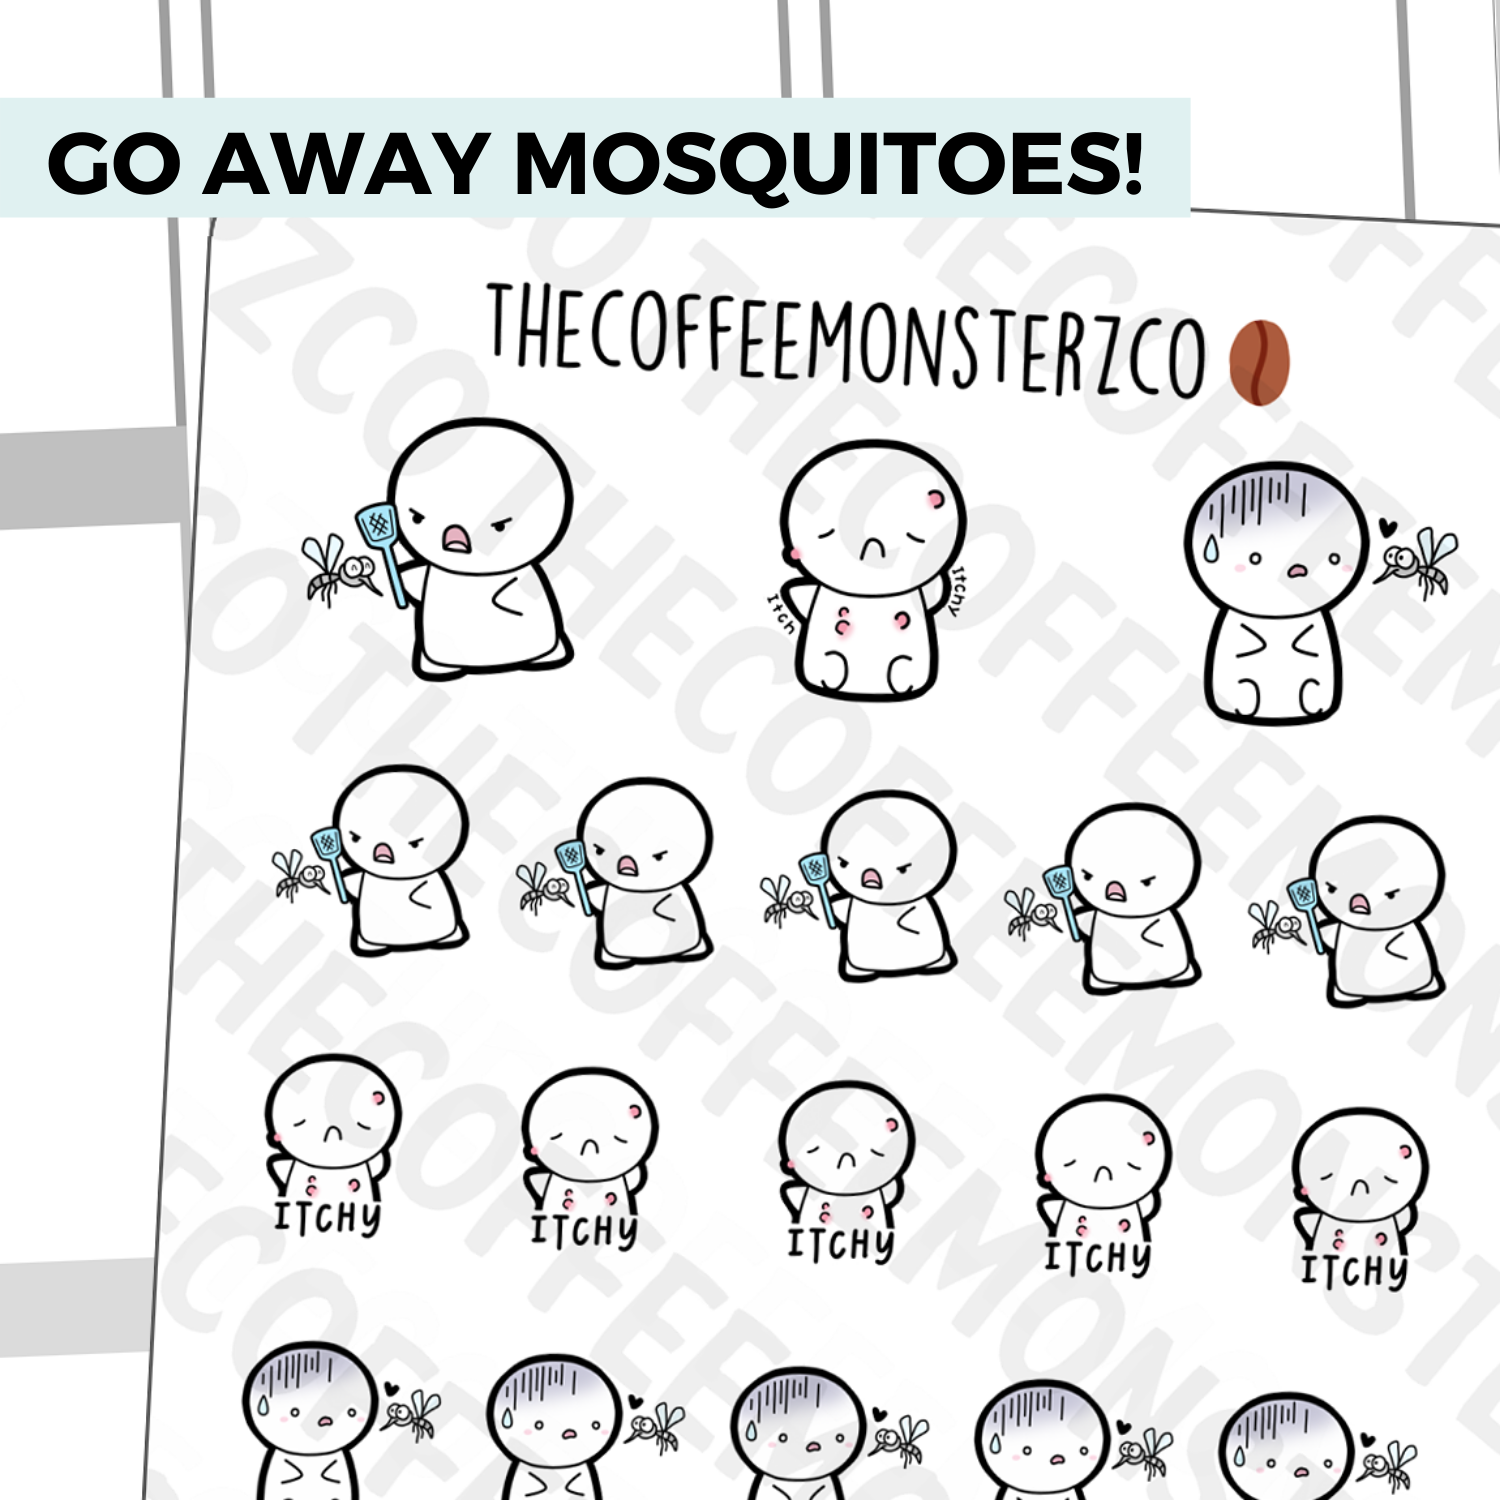 Mosquito Emotis